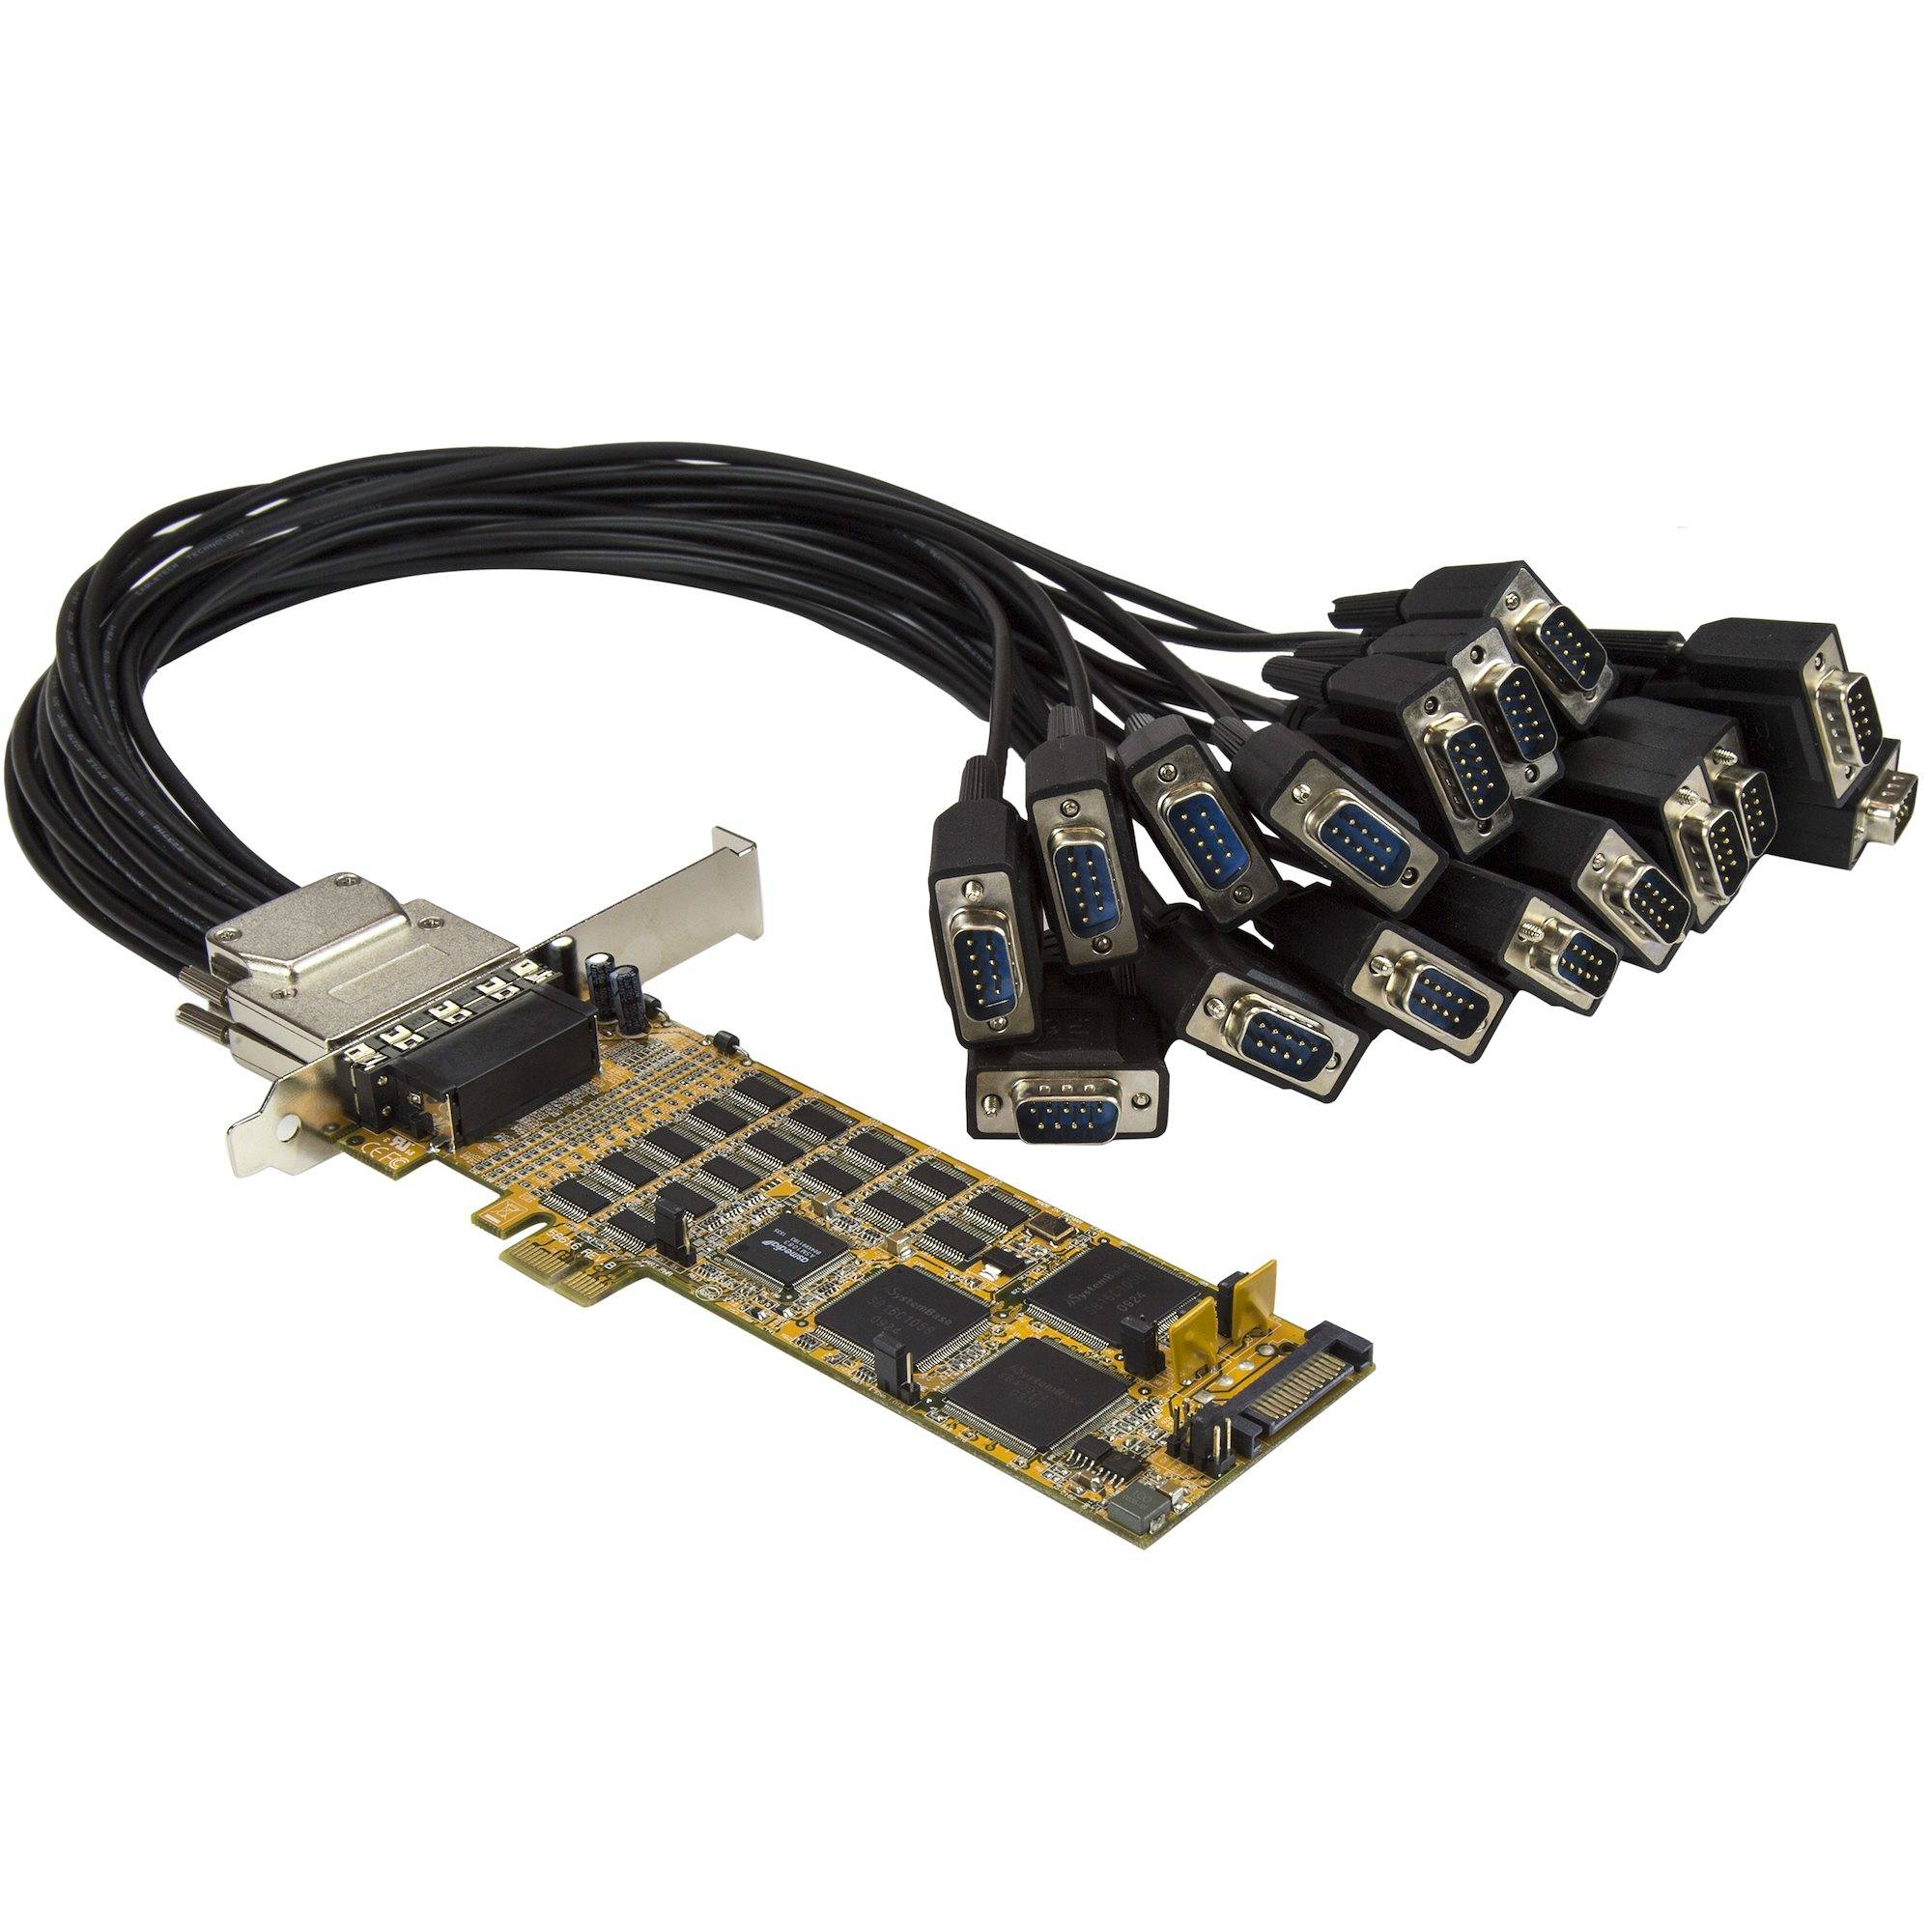 Rca Informatique - Image du produit : CARTE PCI EXPRESS A 16 PORTS SERIE DB9 RS232